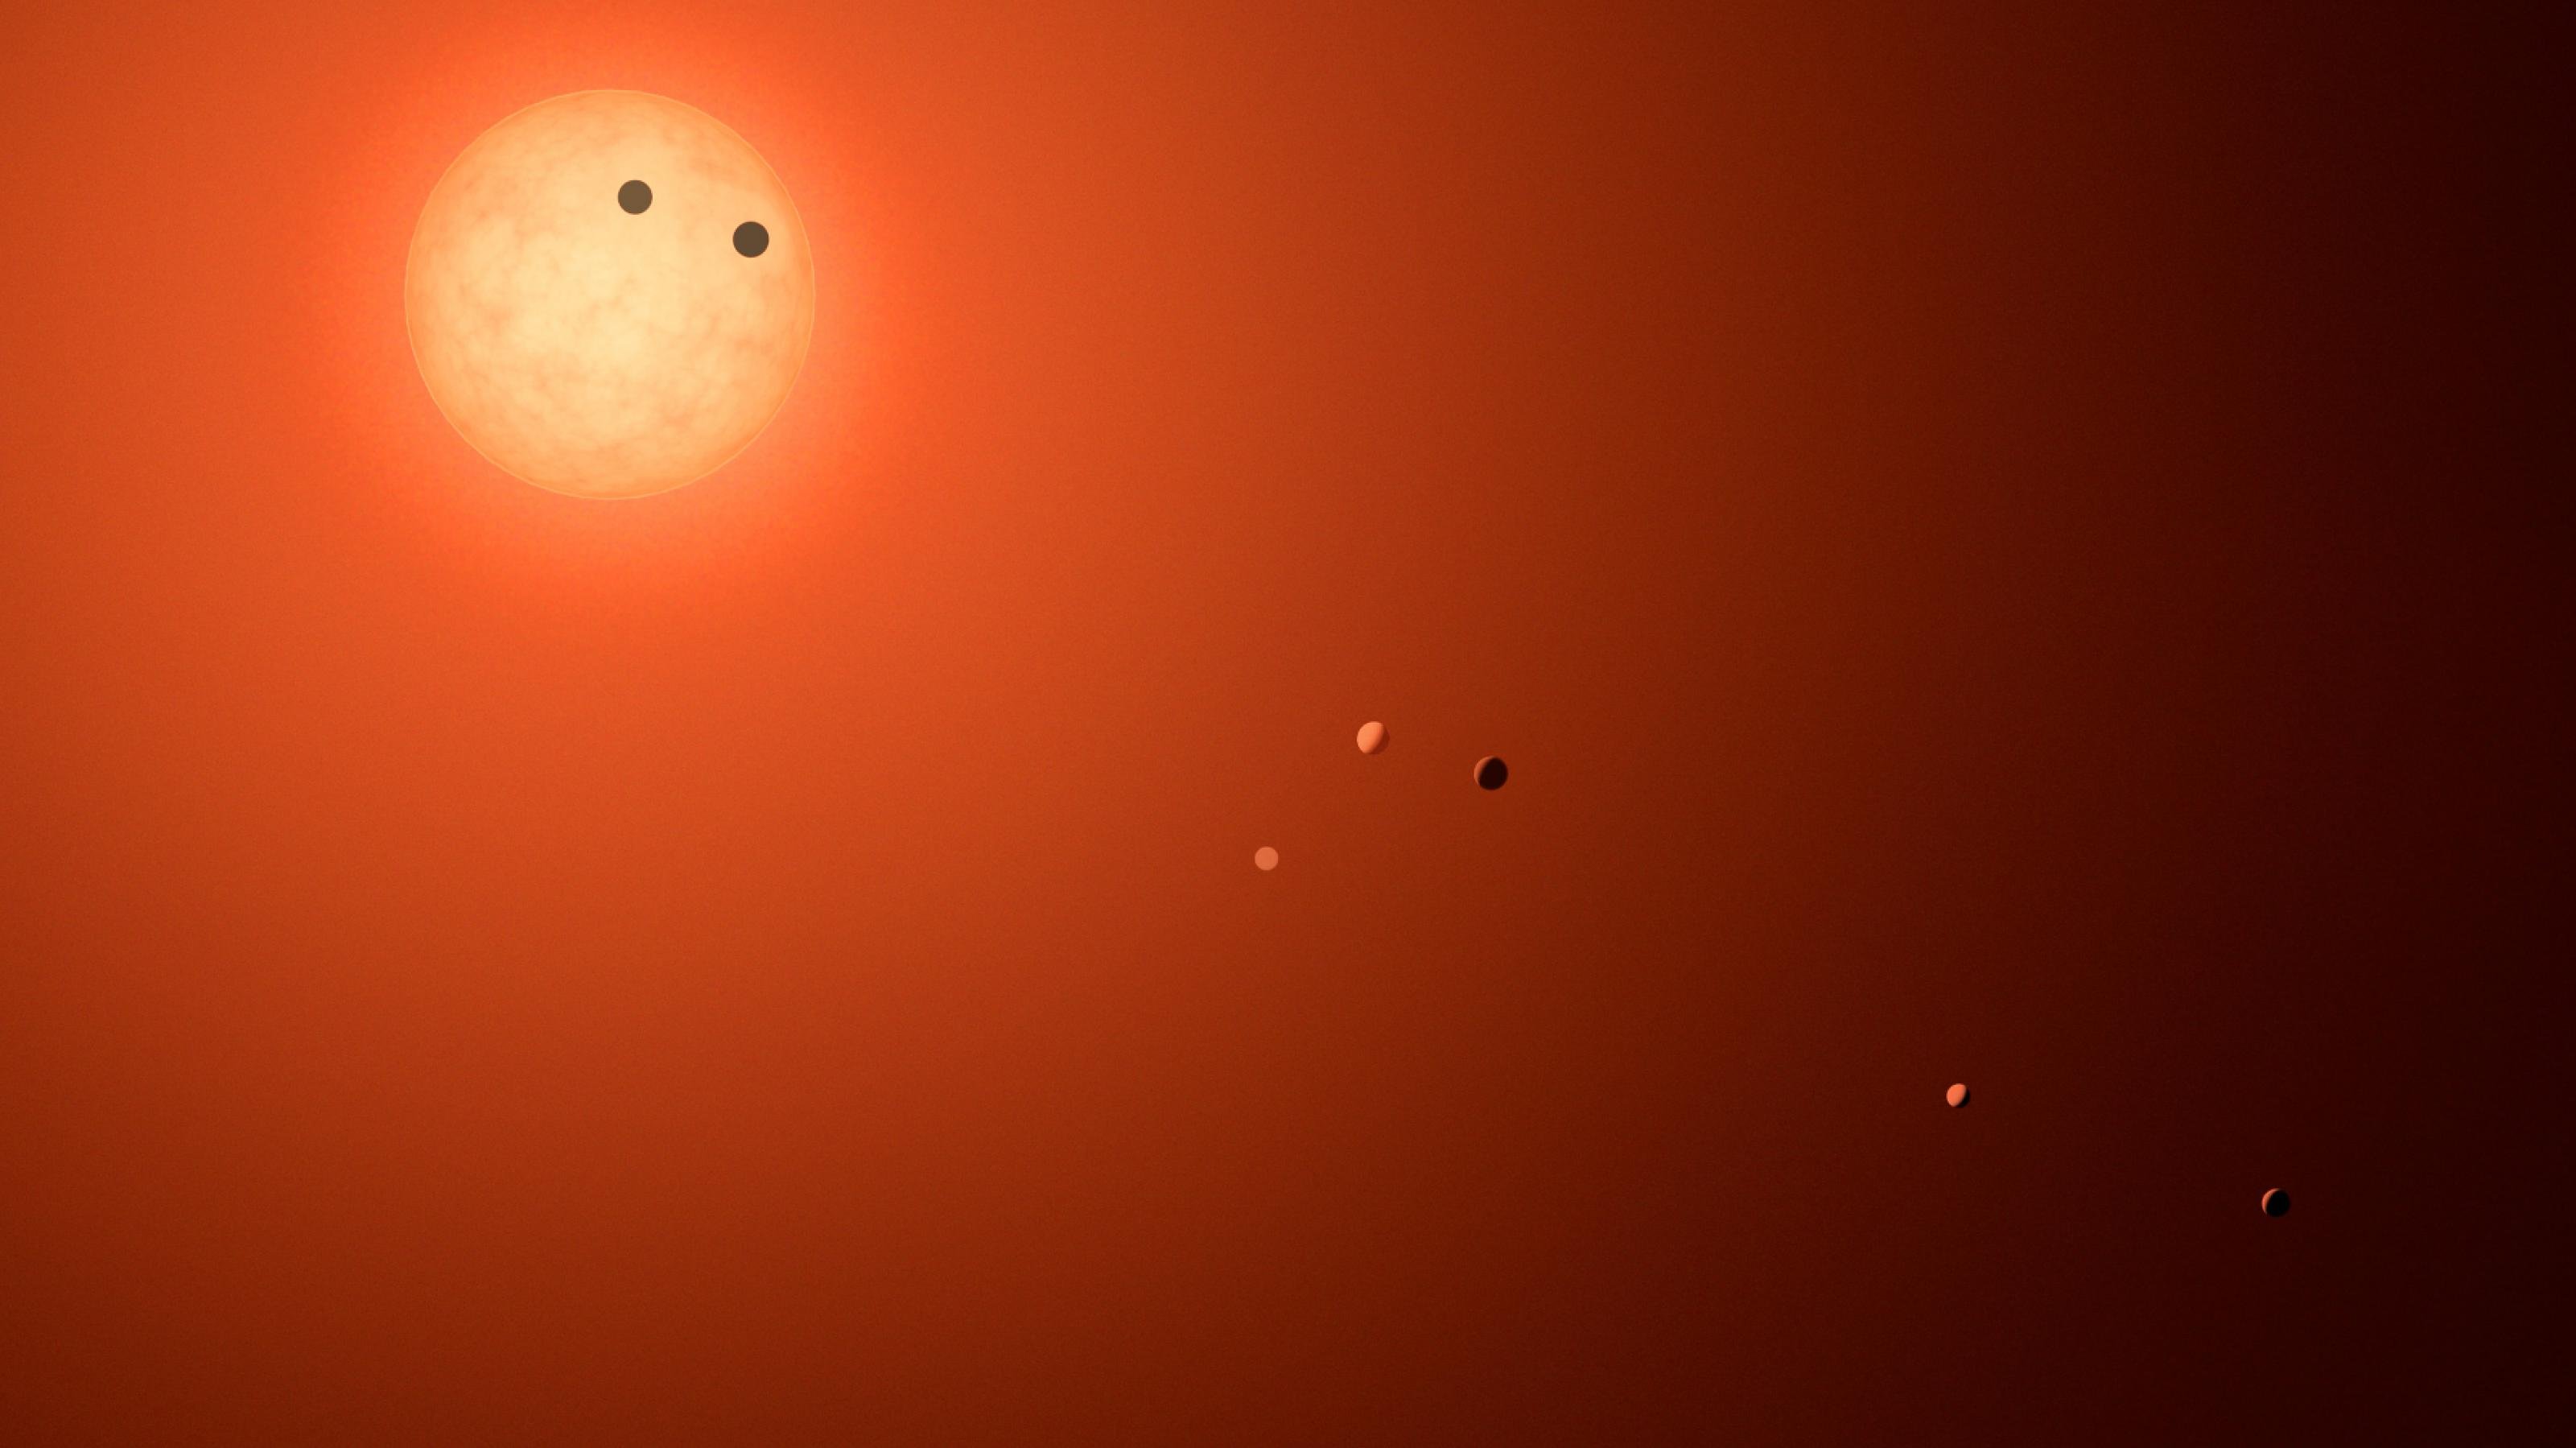 Grafik von einem sehr roten Stern und den sieben als aufgereihte Lichtpunkte erkennbaren Planeten